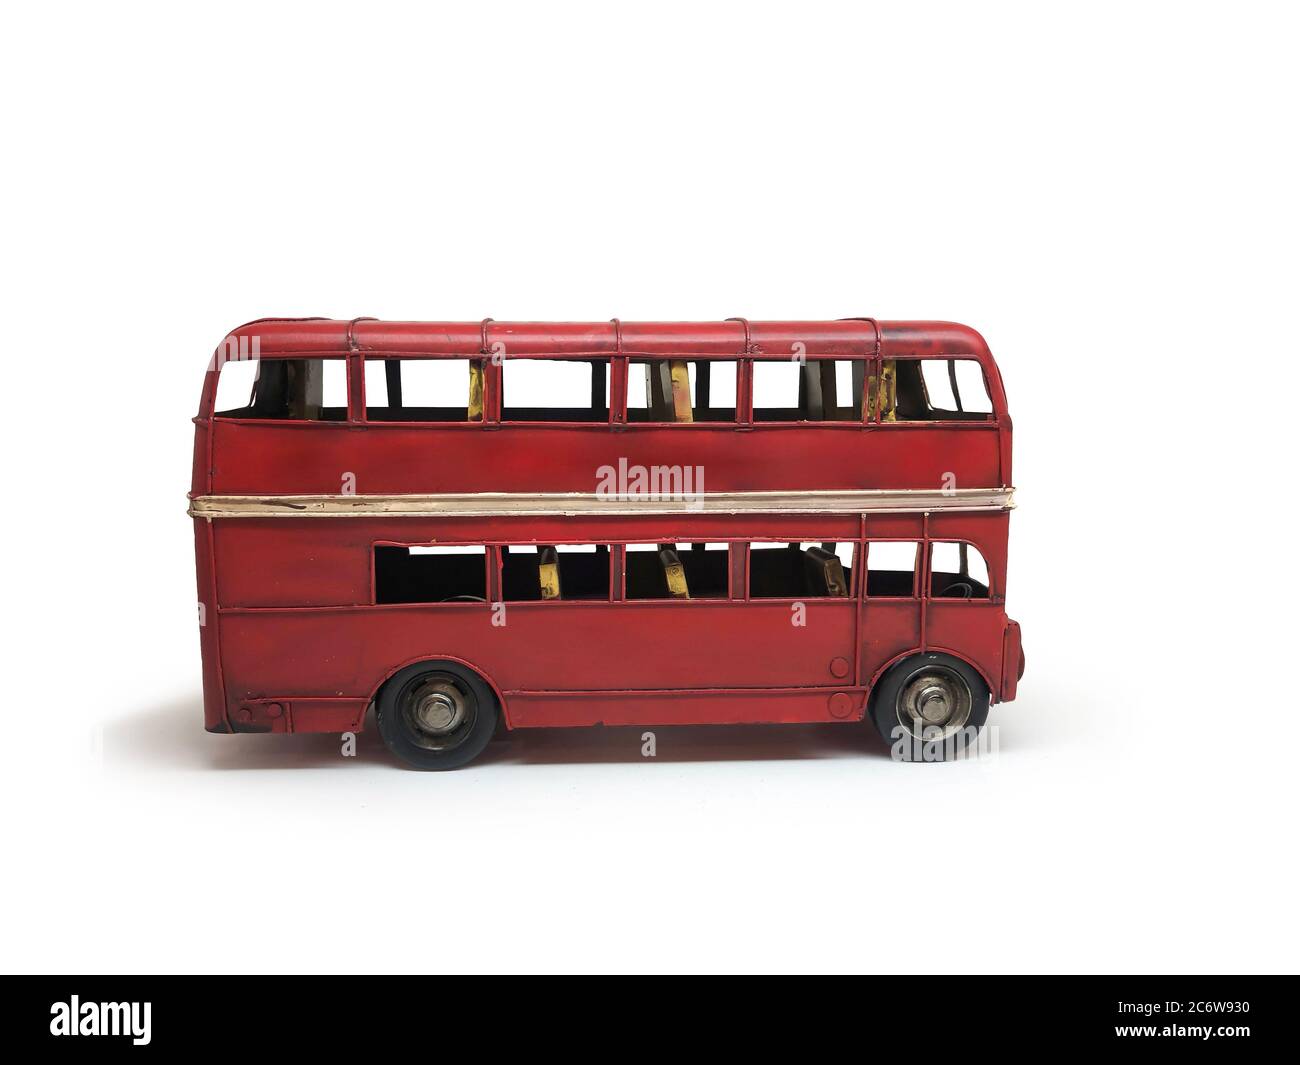 Isolé rouge bus double deckers jouets style vintage, est sur fond blanc. Masque. Banque D'Images